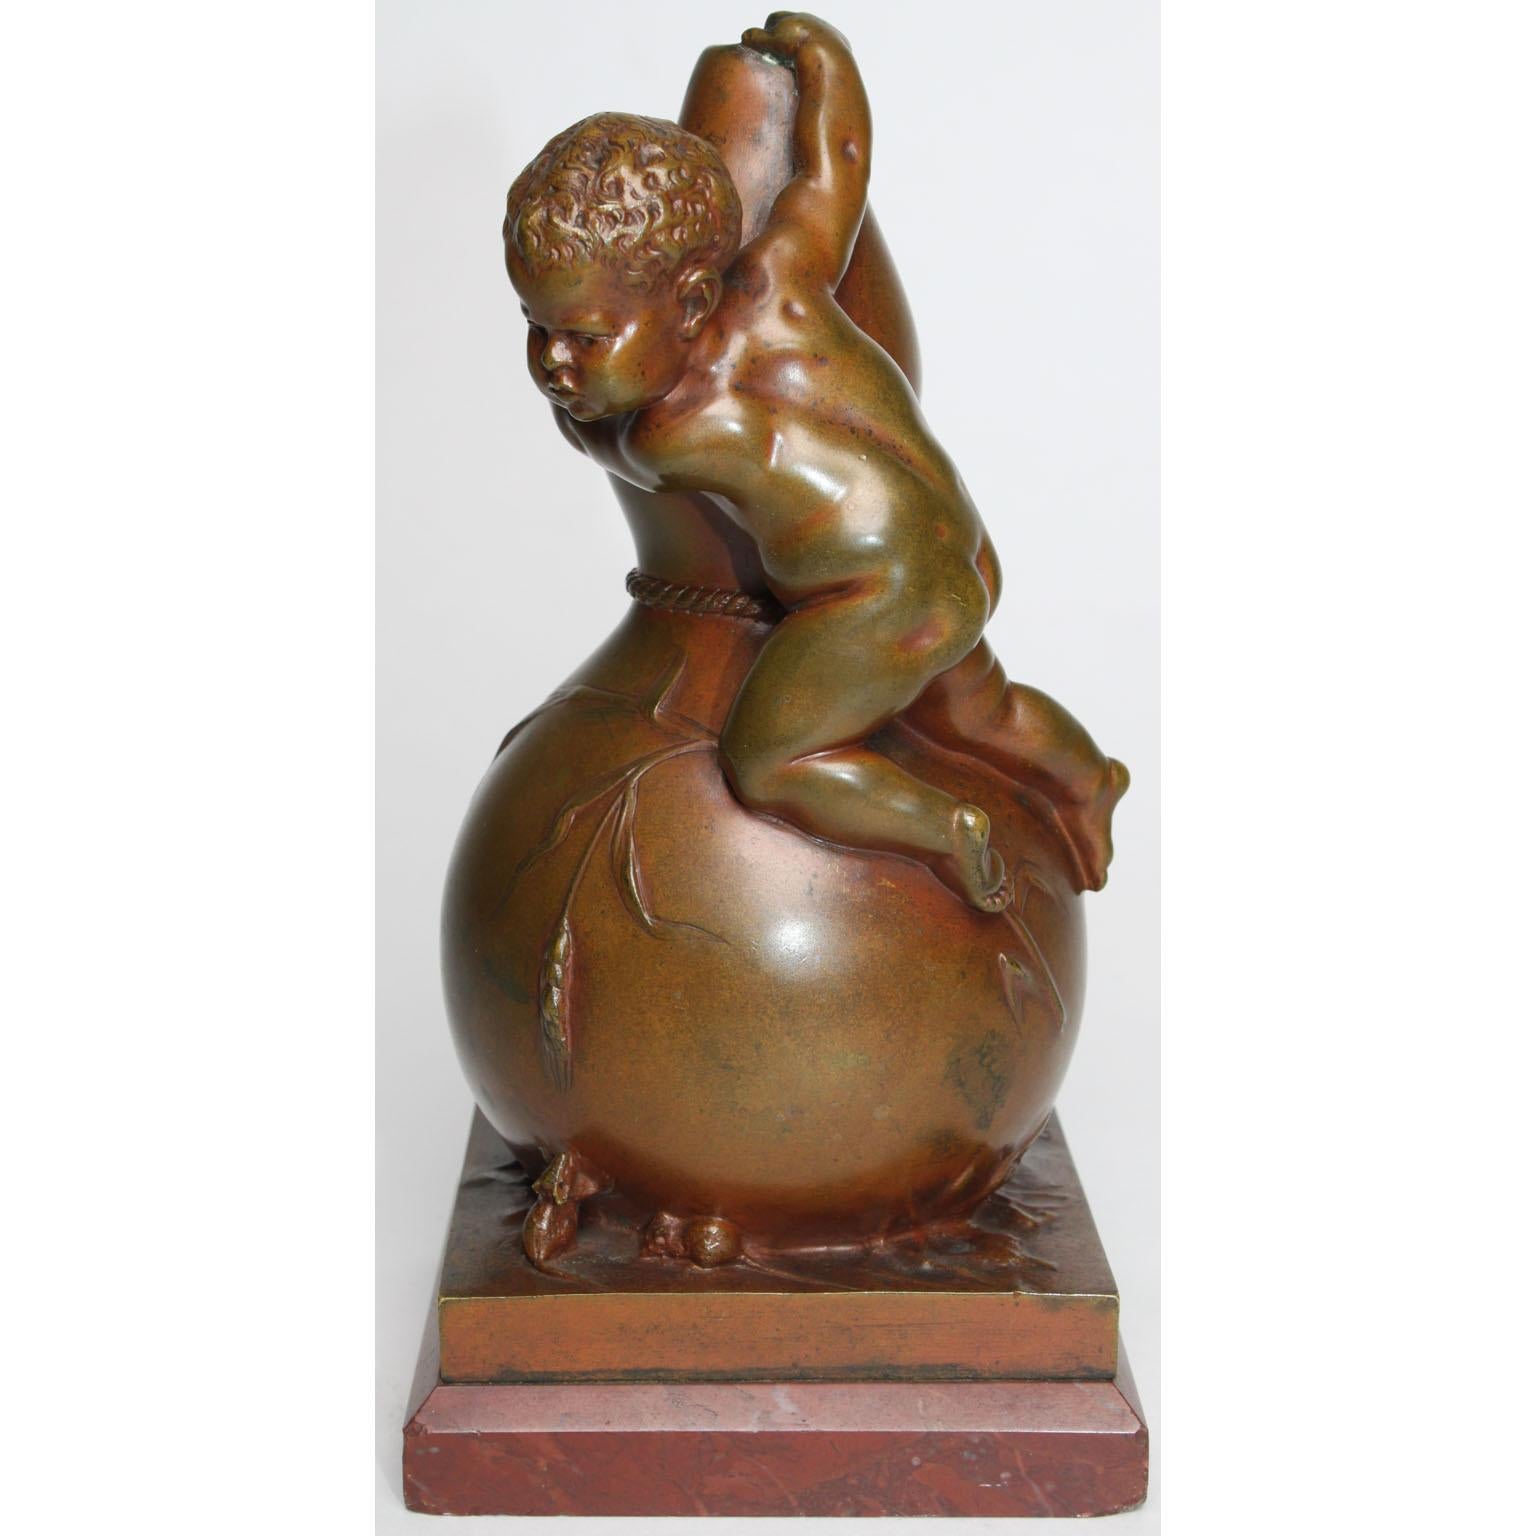 Louis Kley (Franzose, 1833-1911) Eine schöne und charmante patinierte Bronzegruppe eines Jungen, der auf eine Vase klettert und Angst vor zwei Mäusen hat. Die fein gearbeitete Bronzegruppe zeigt einen nackten kleinen Jungen auf einer